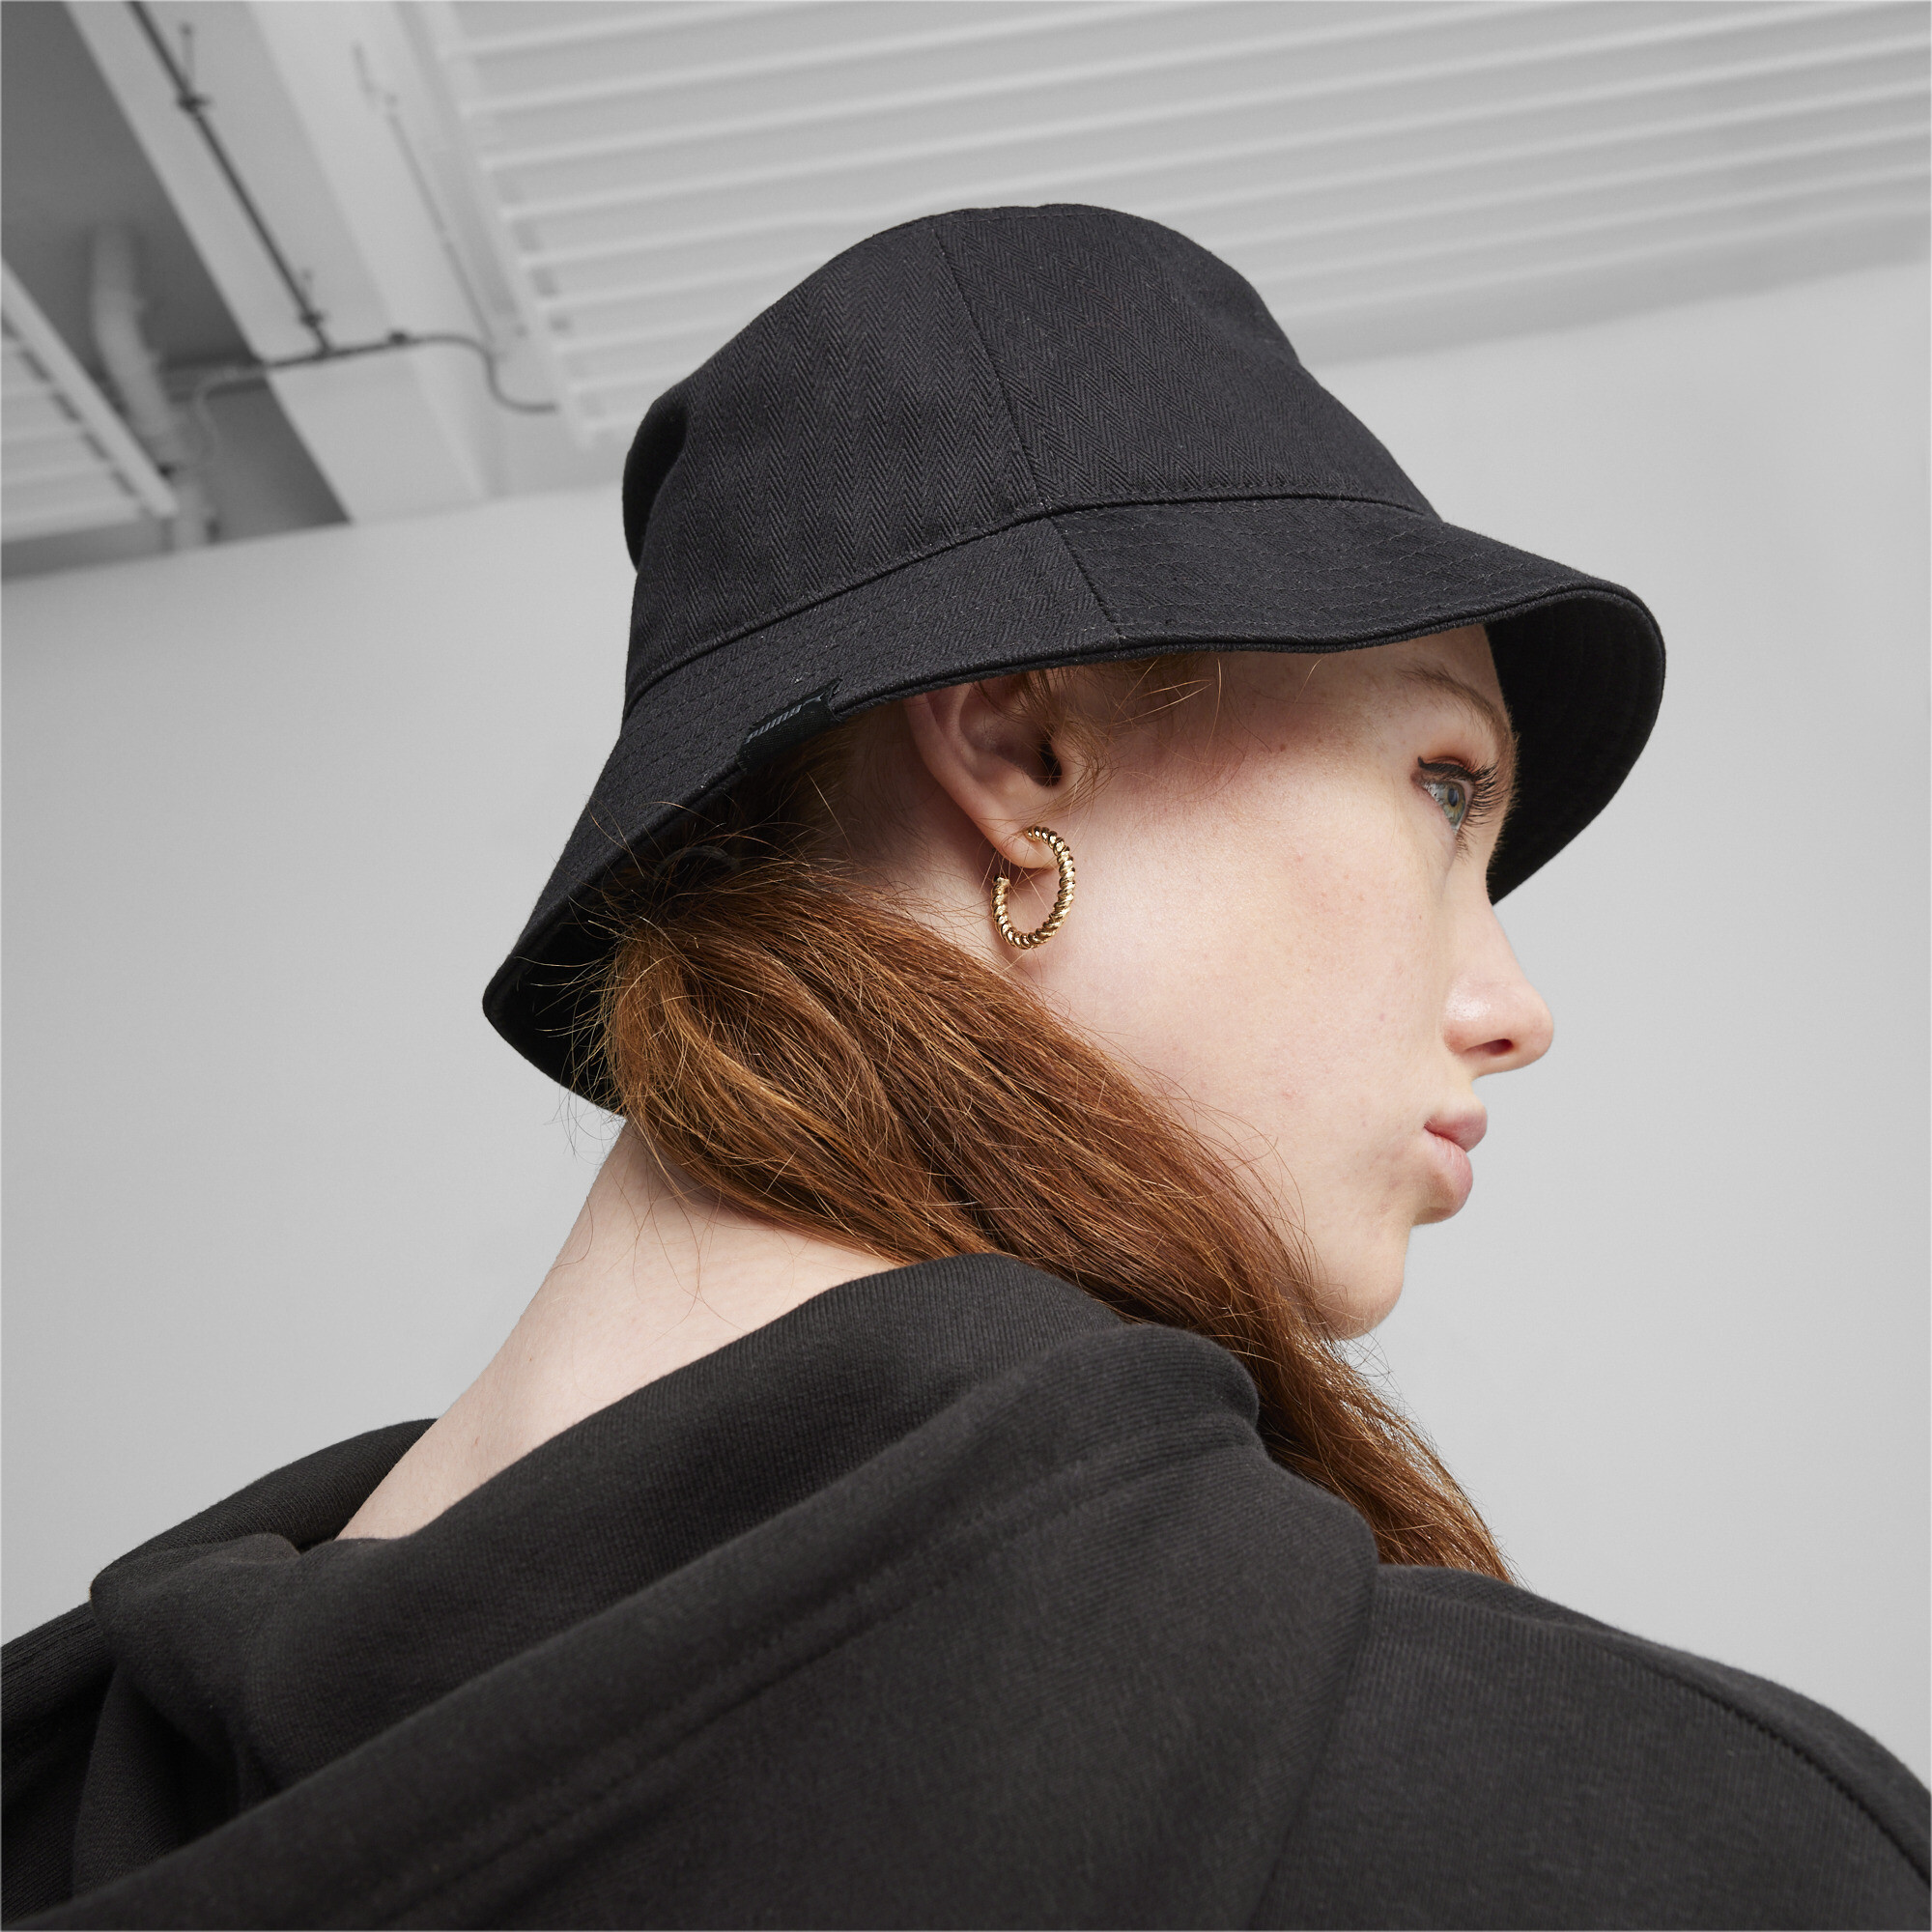 Women's PUMA Skate Bucket Hat In Black, Size Large